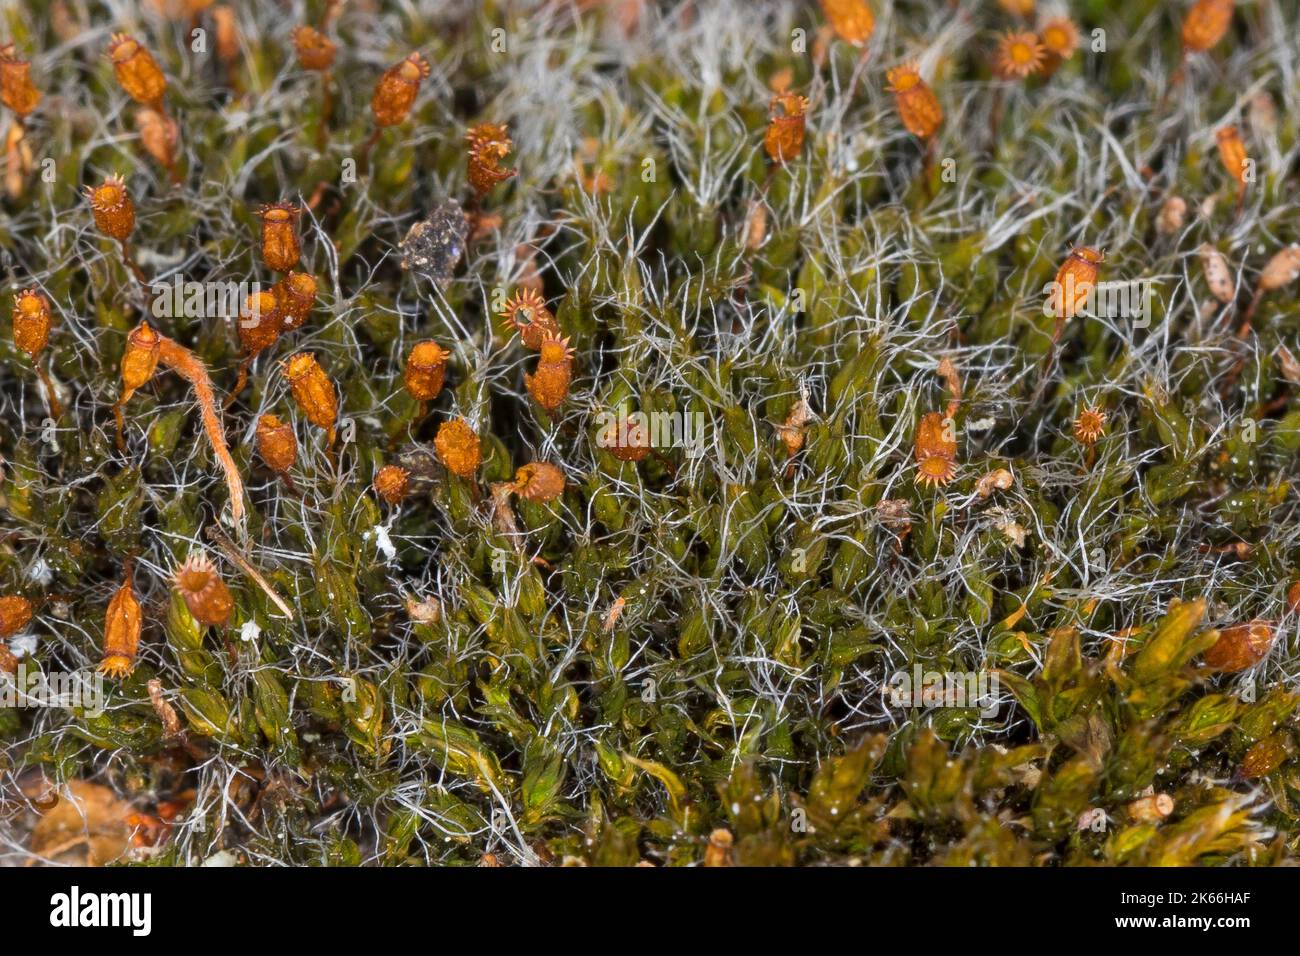 Coussin de mousse, trottoir d'argent (Grimmia pulvinata), sur un mur, Allemagne Banque D'Images